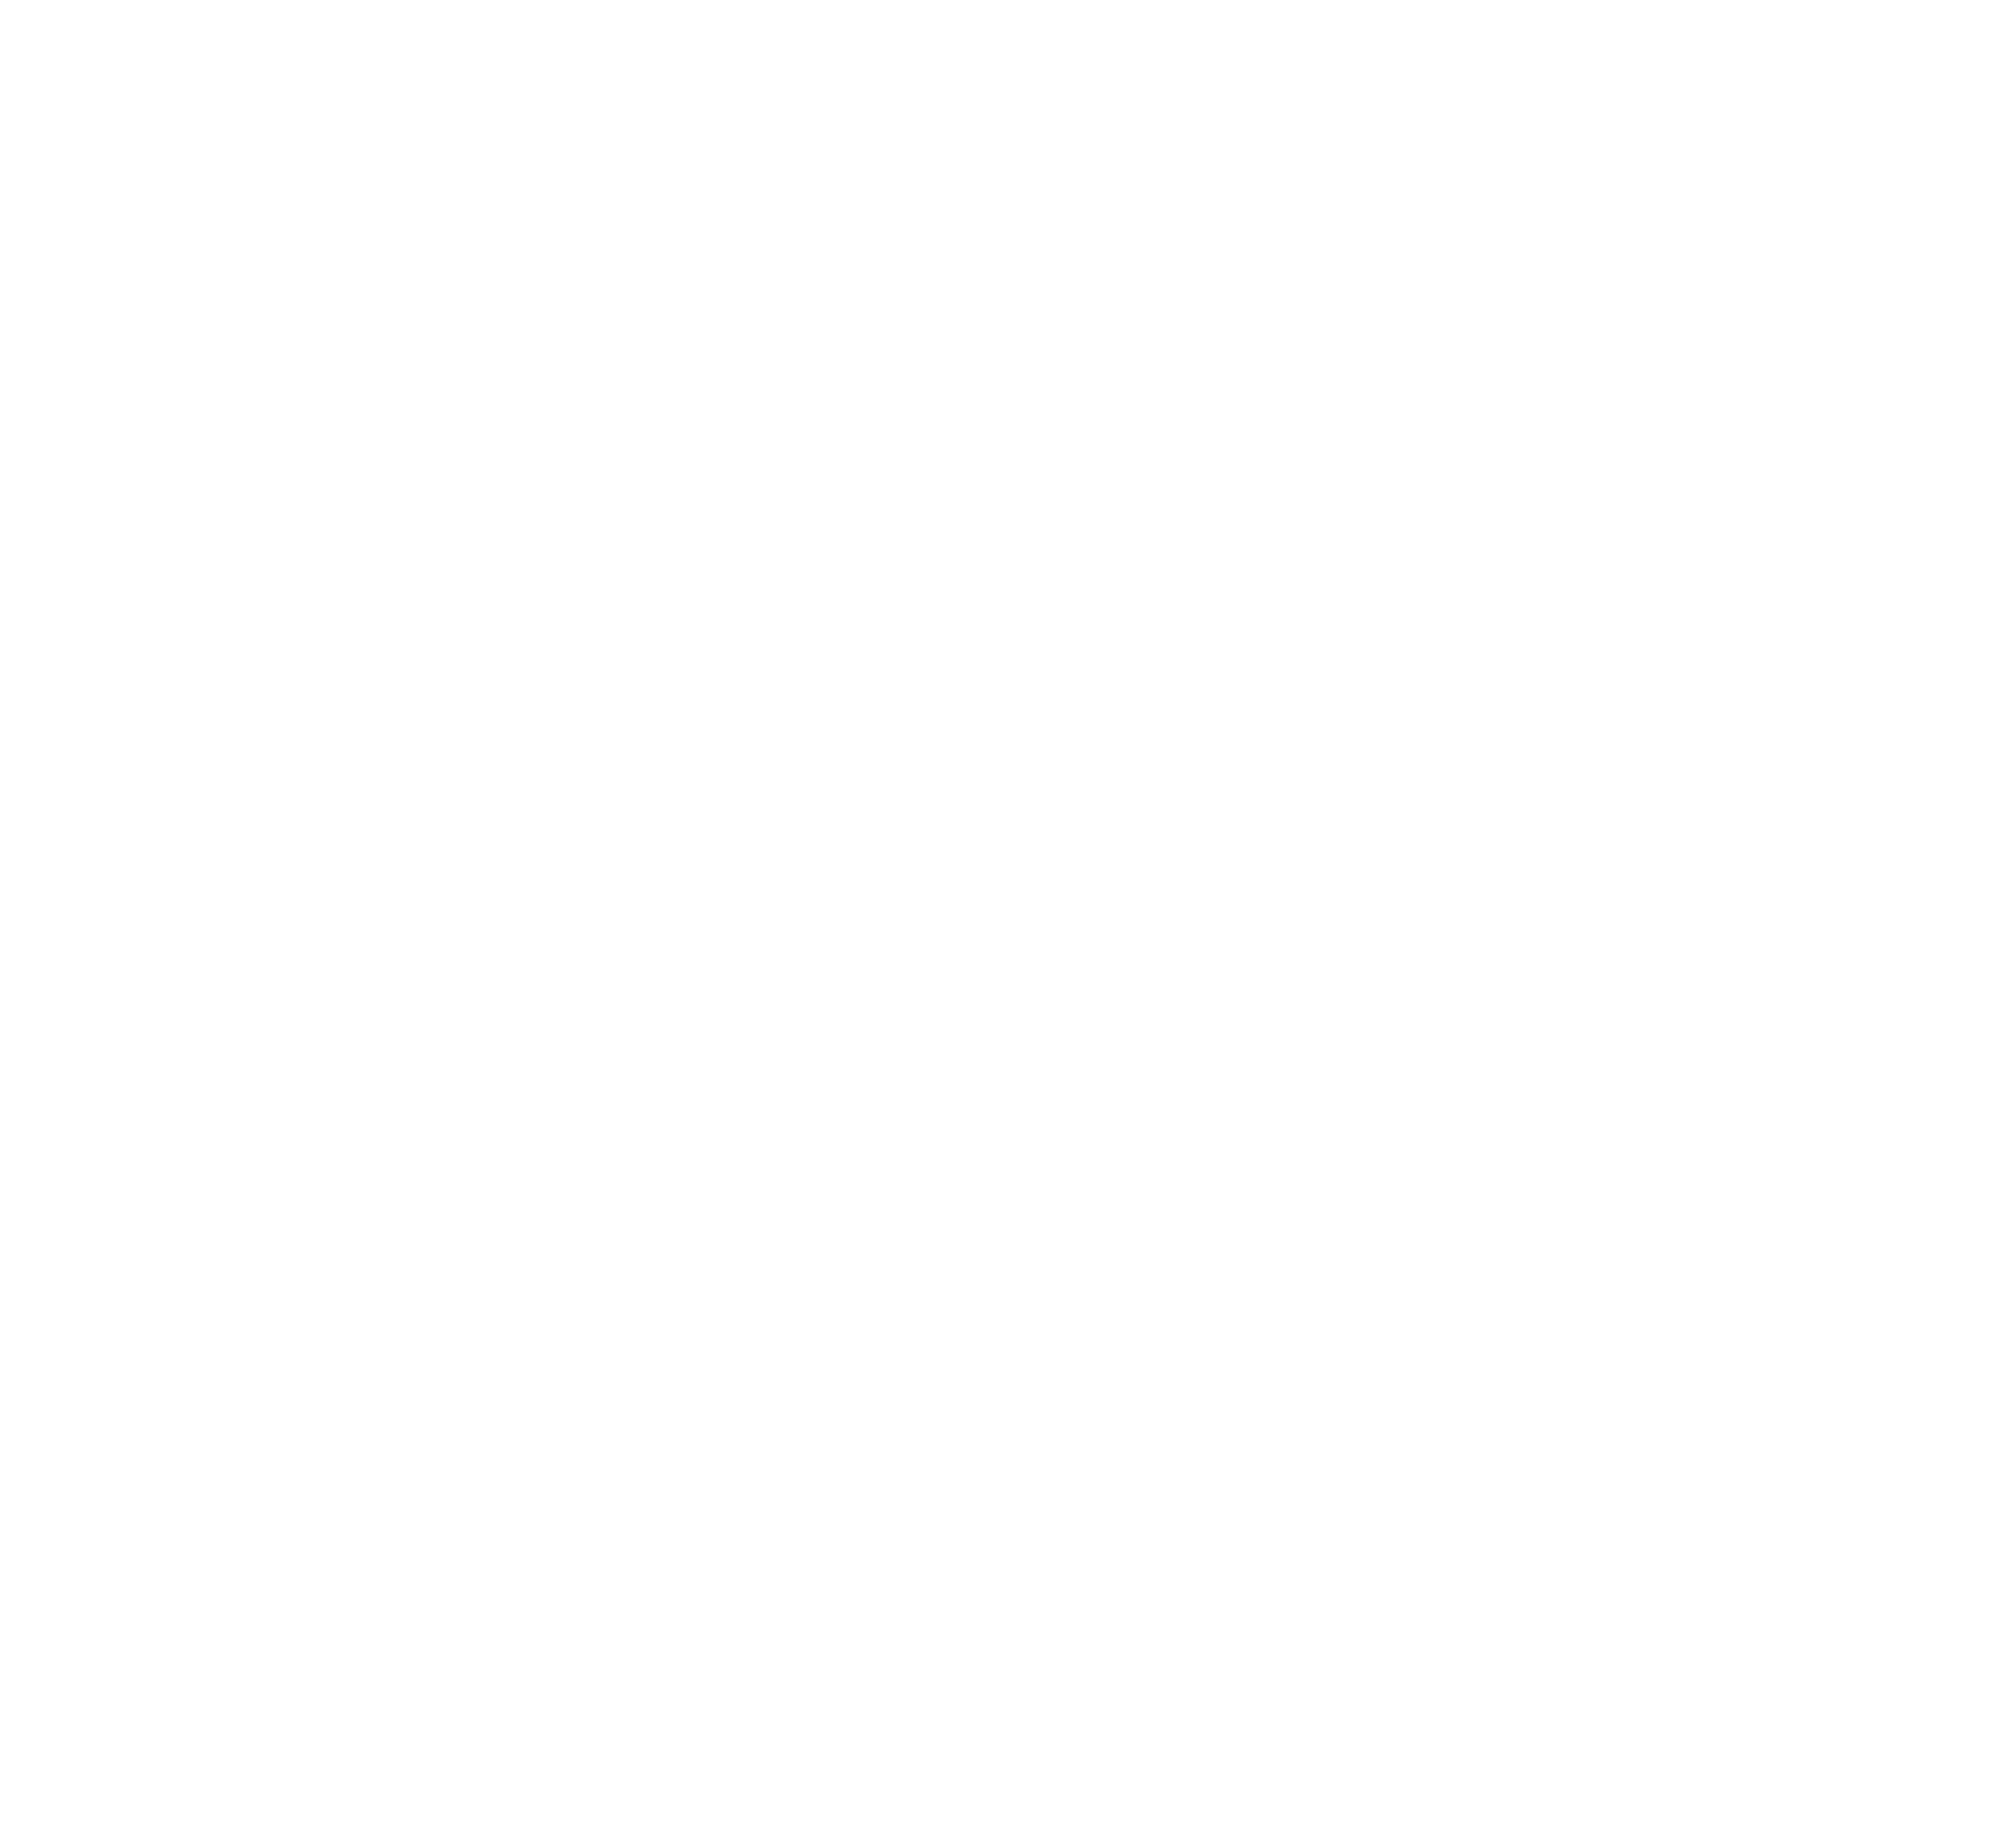 INTERFINANC